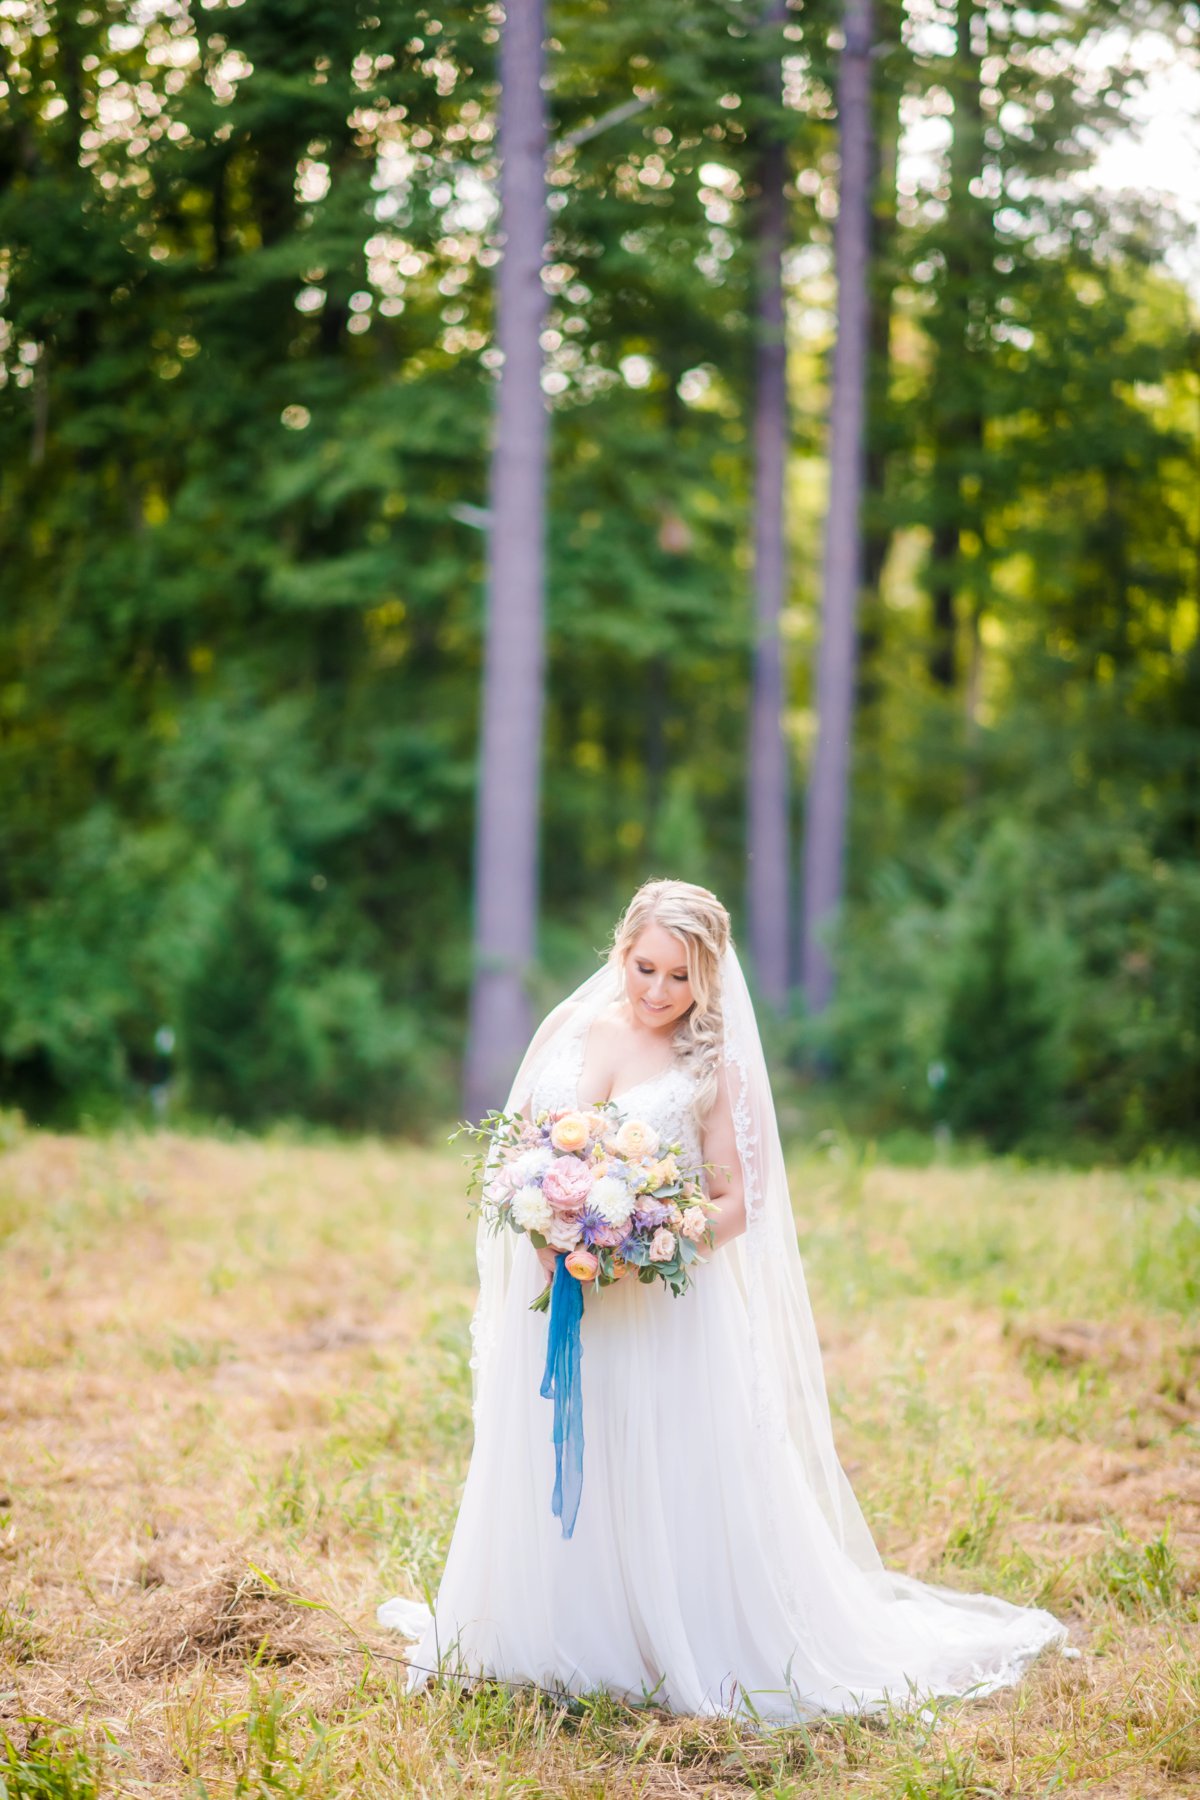 A Colorful Outdoor North Carolina Wedding via TheELD.com